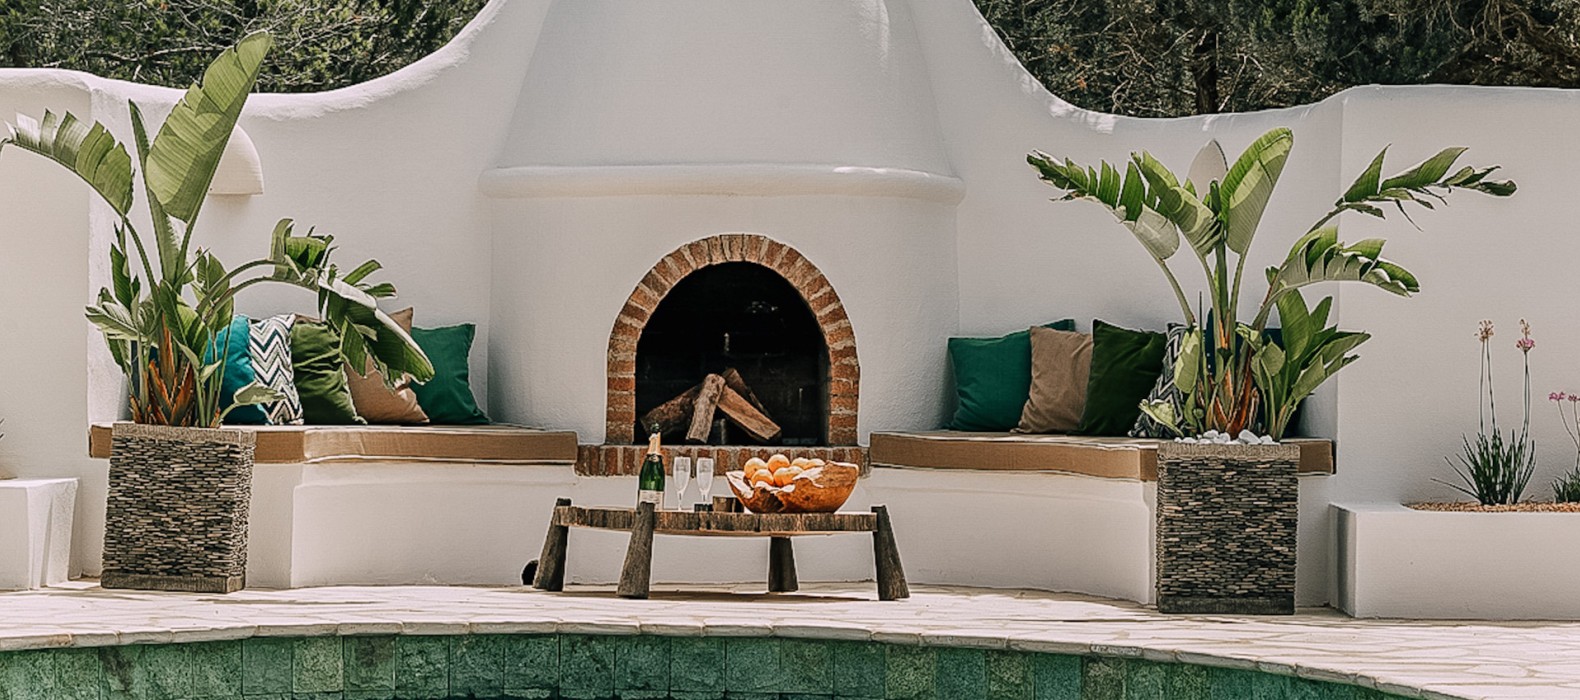 Lounge area with fire place of Villa La Colina in Ibiza